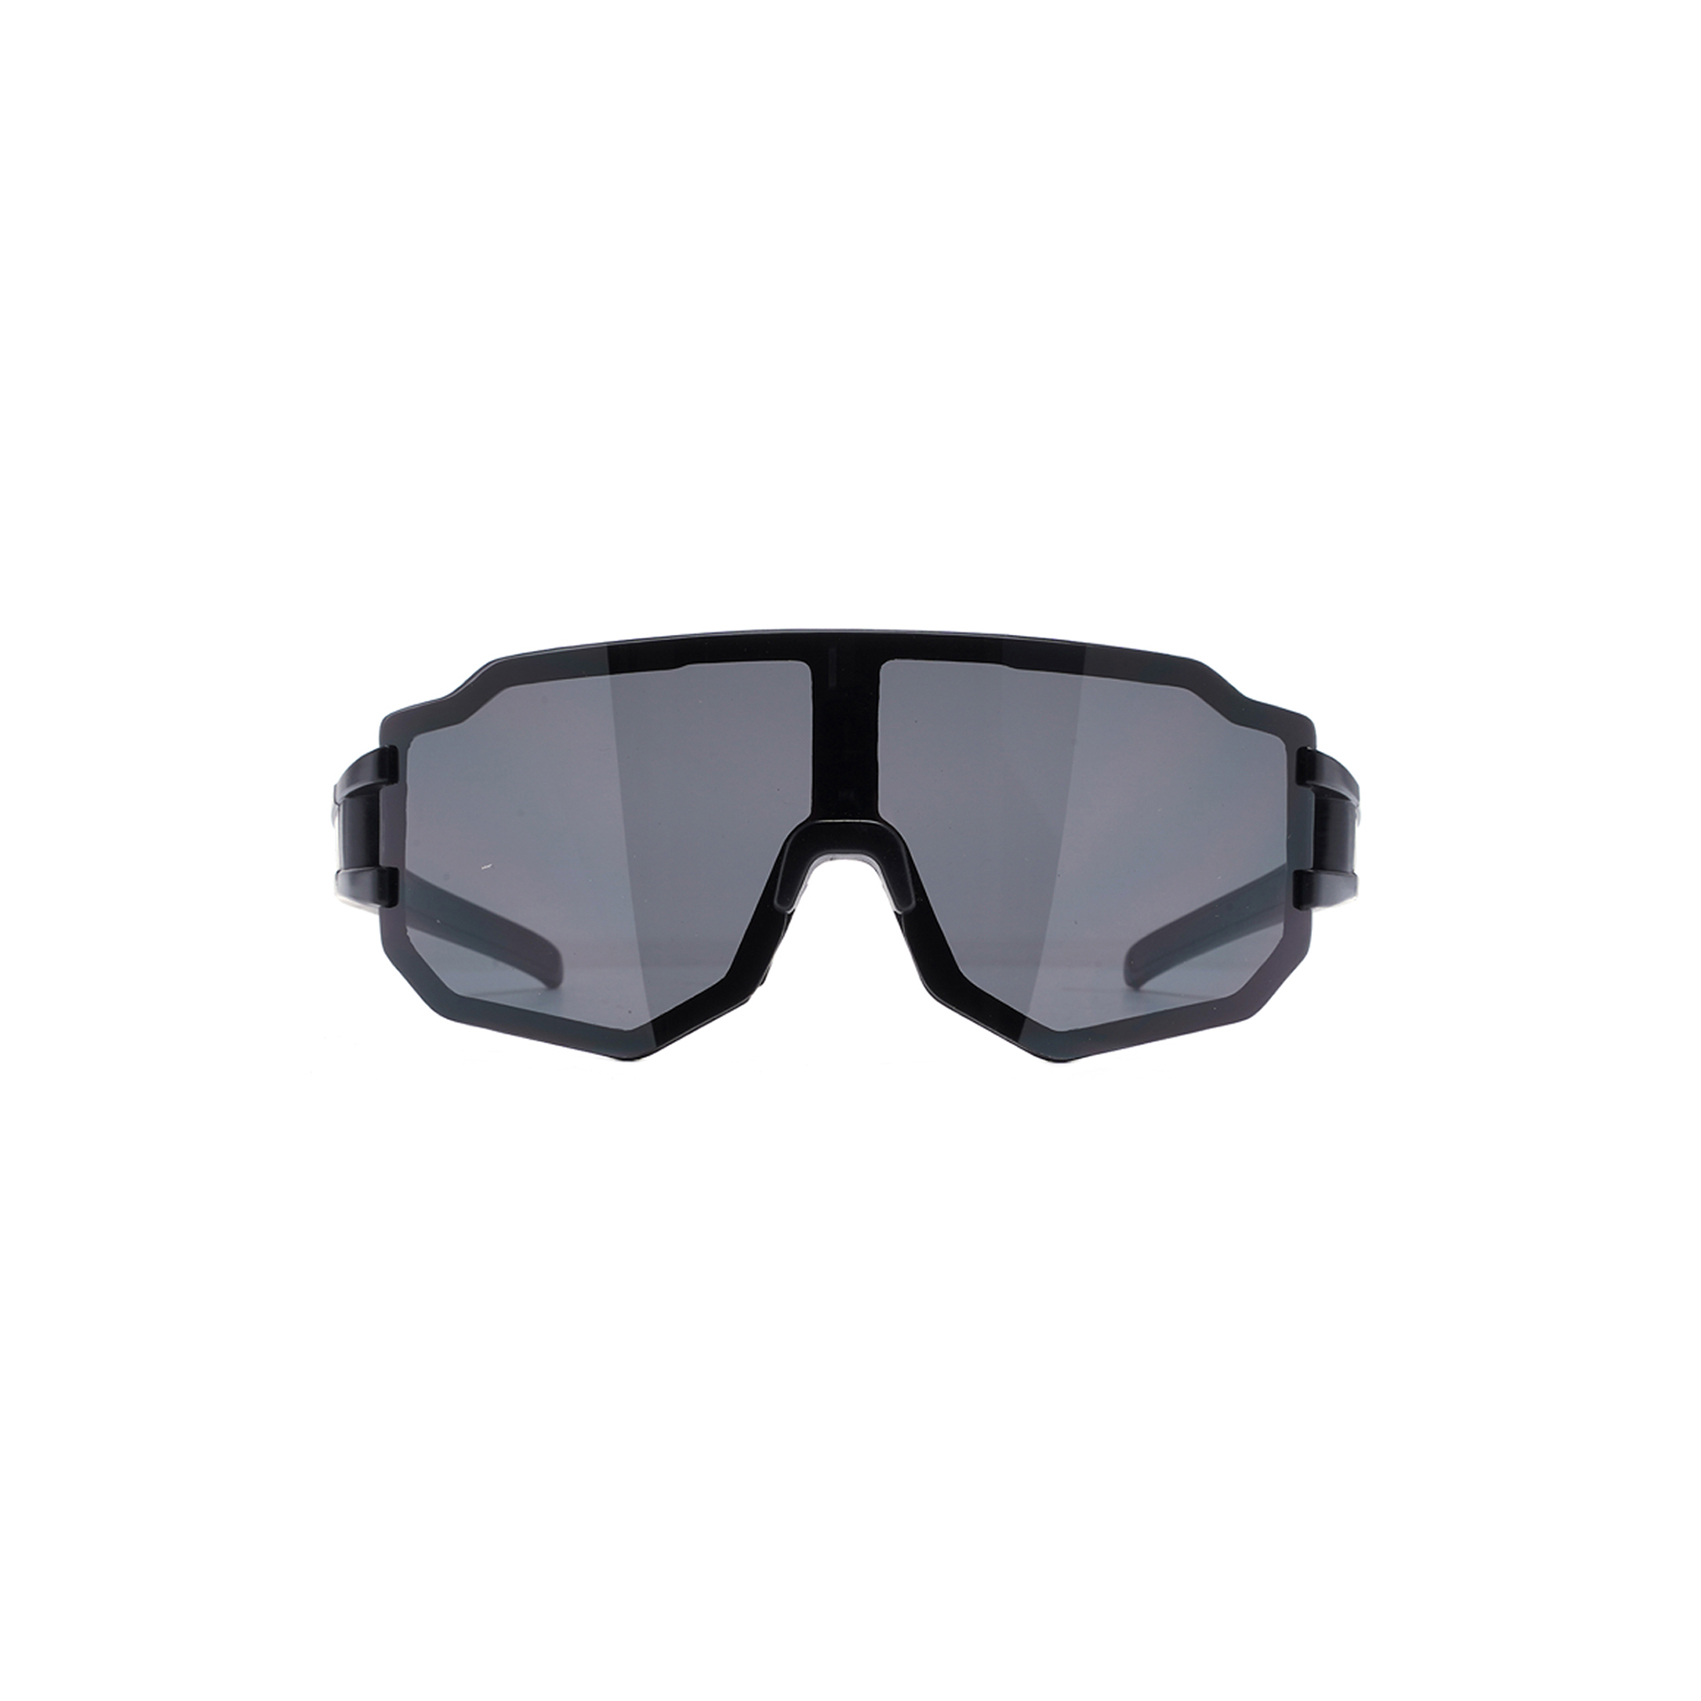 Flat Frameless Oversized Shield Wraparound Sunglasses for Men Shield Sunglasses Designer